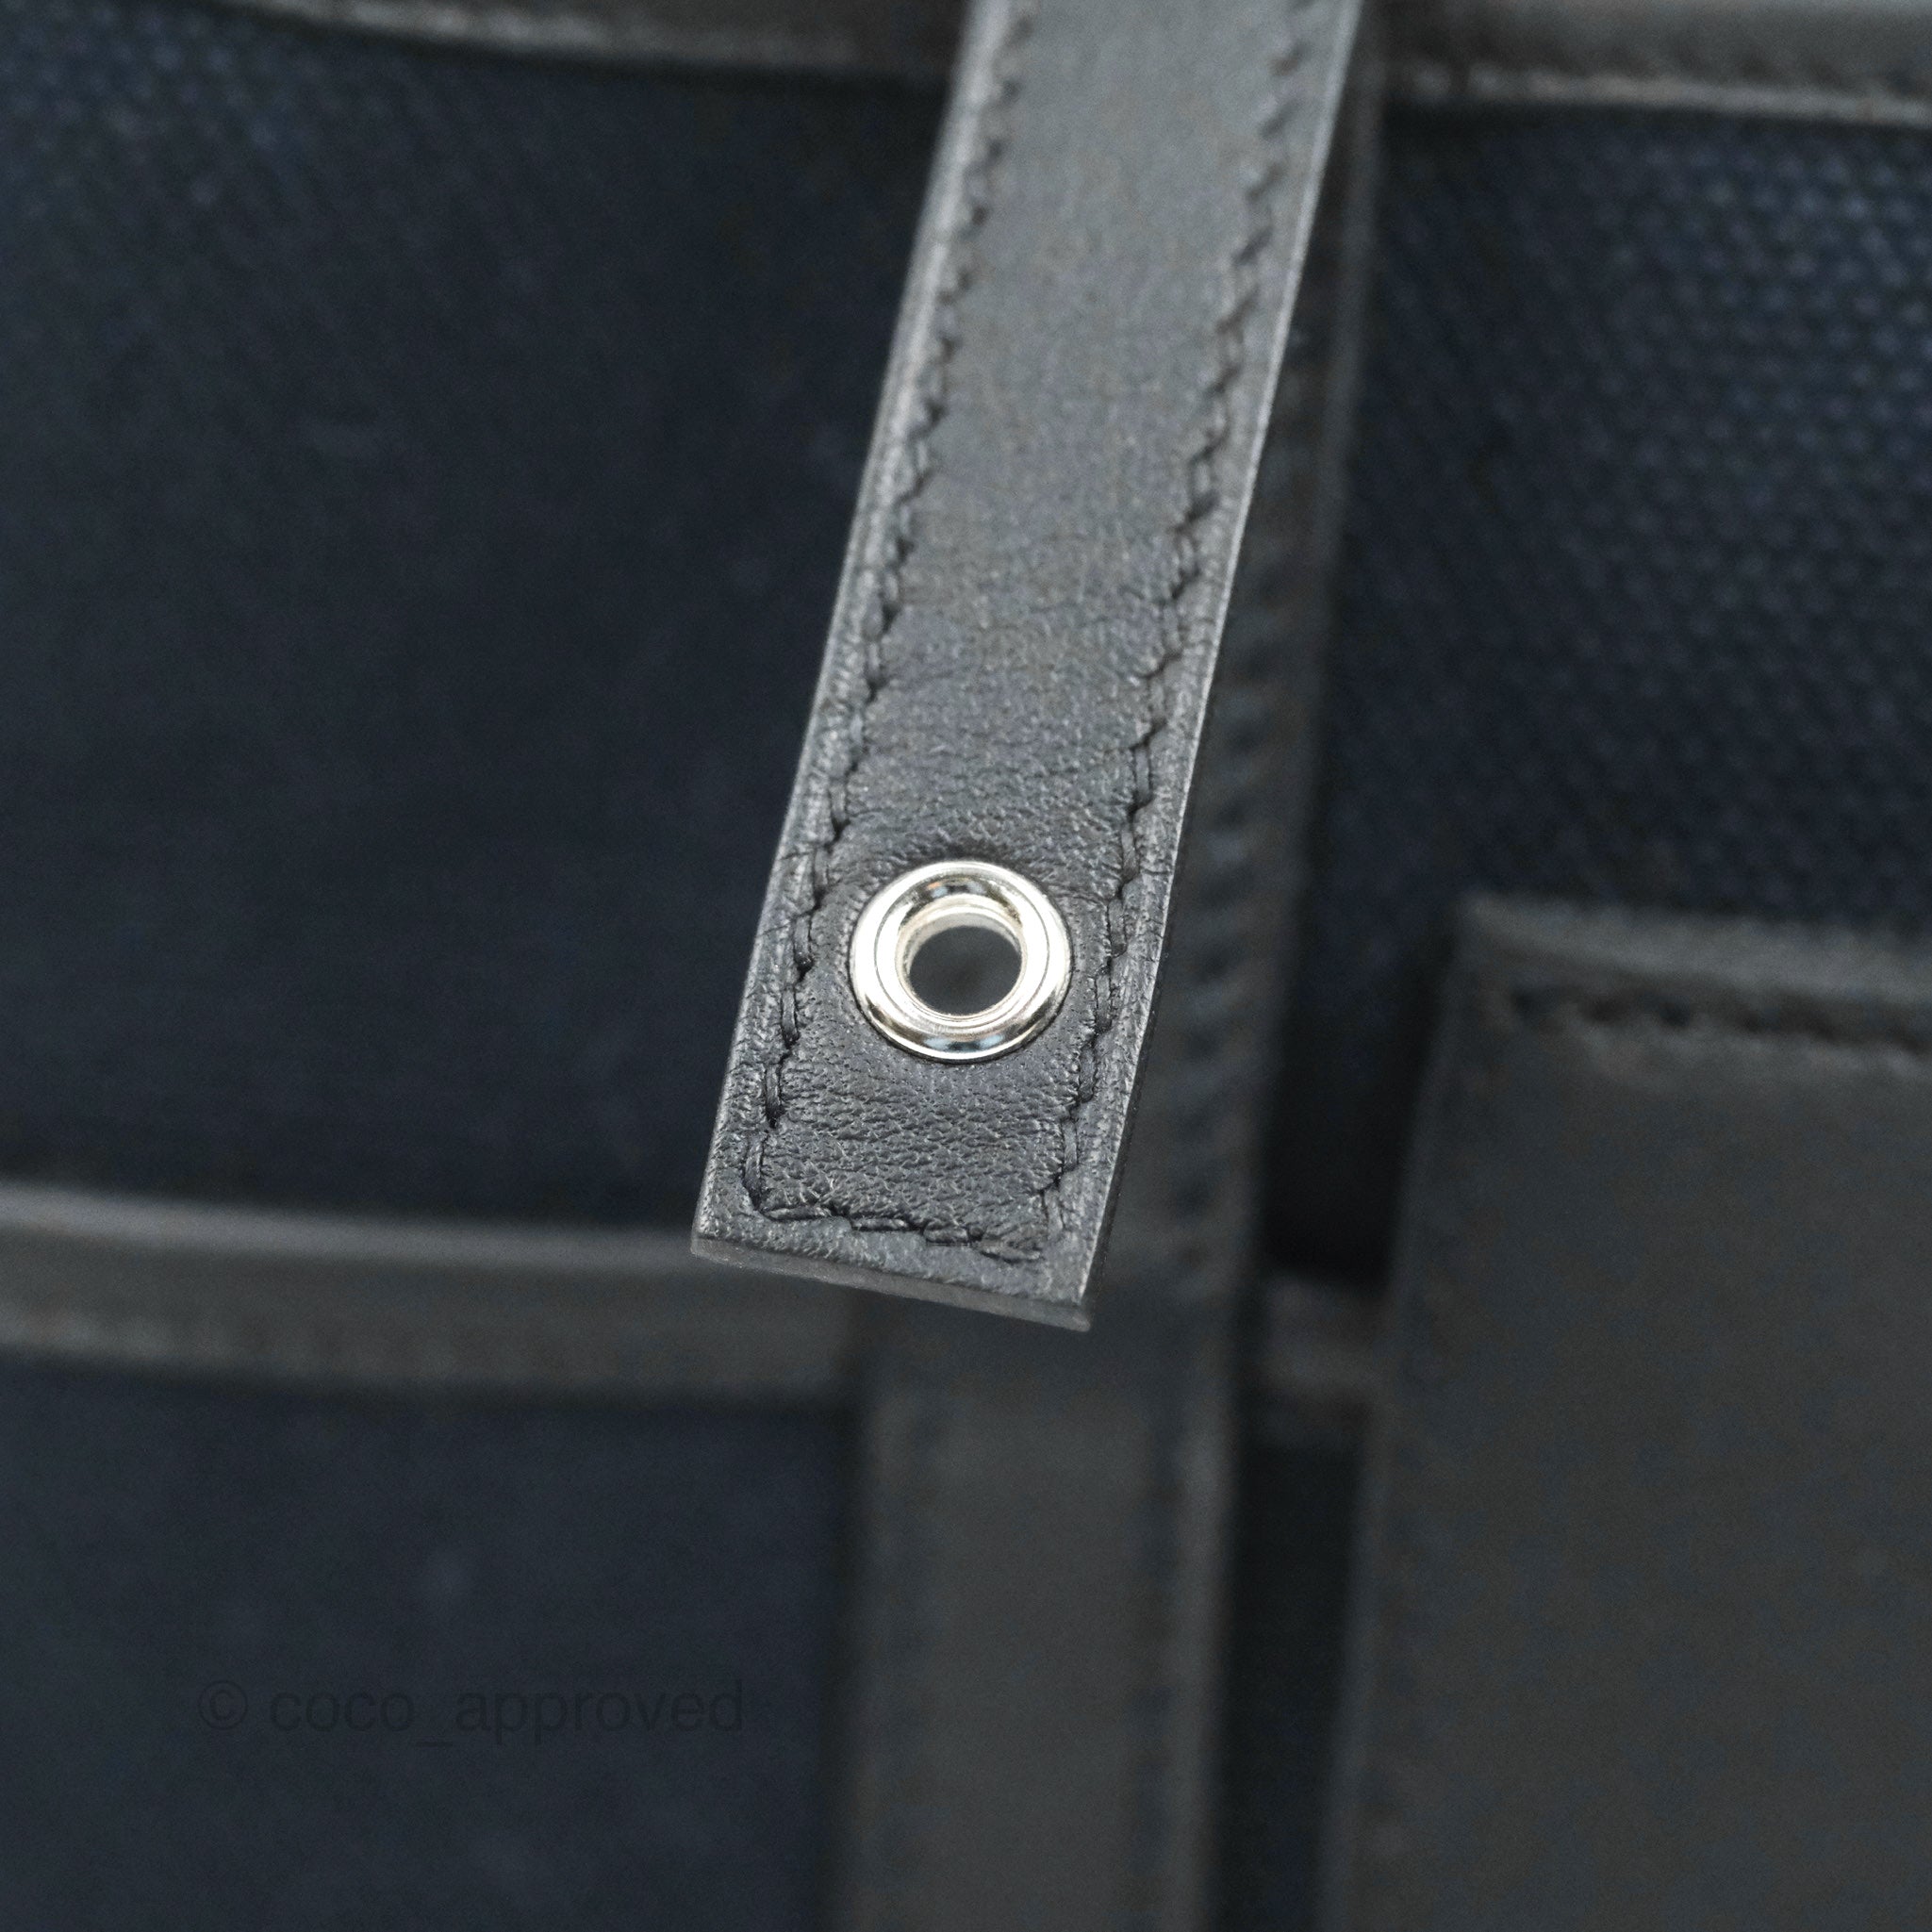 Hermès Picotin Lock 18 In Bleu Royal With Palladium Hardware in Blue